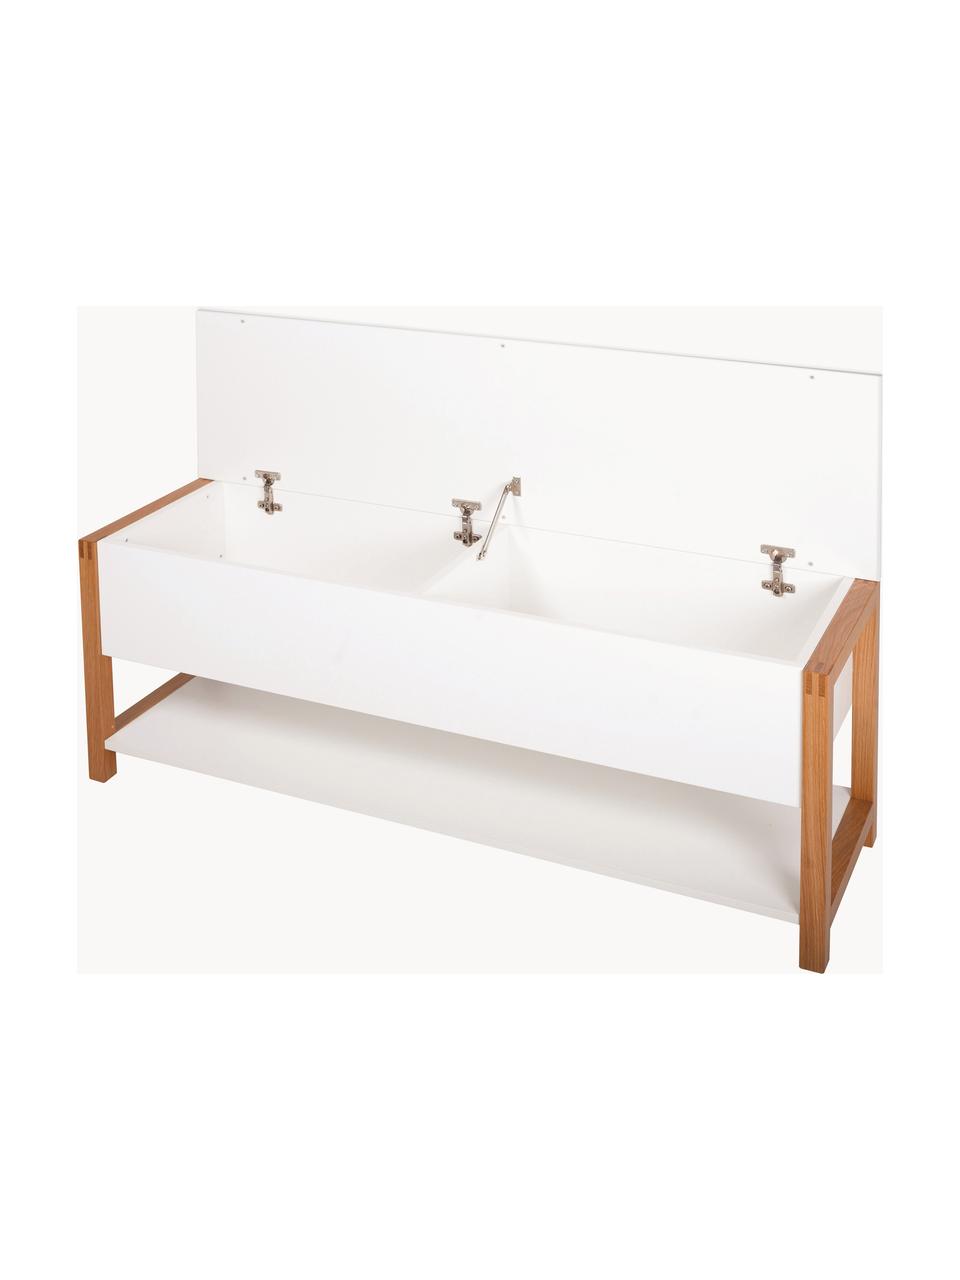 Garderoben-Sitzbank Northgate mit Stauraum, Rahmen: Eichenholz Dieses Produkt, Weiß, Eichenholz, B 120 x H 48 cm